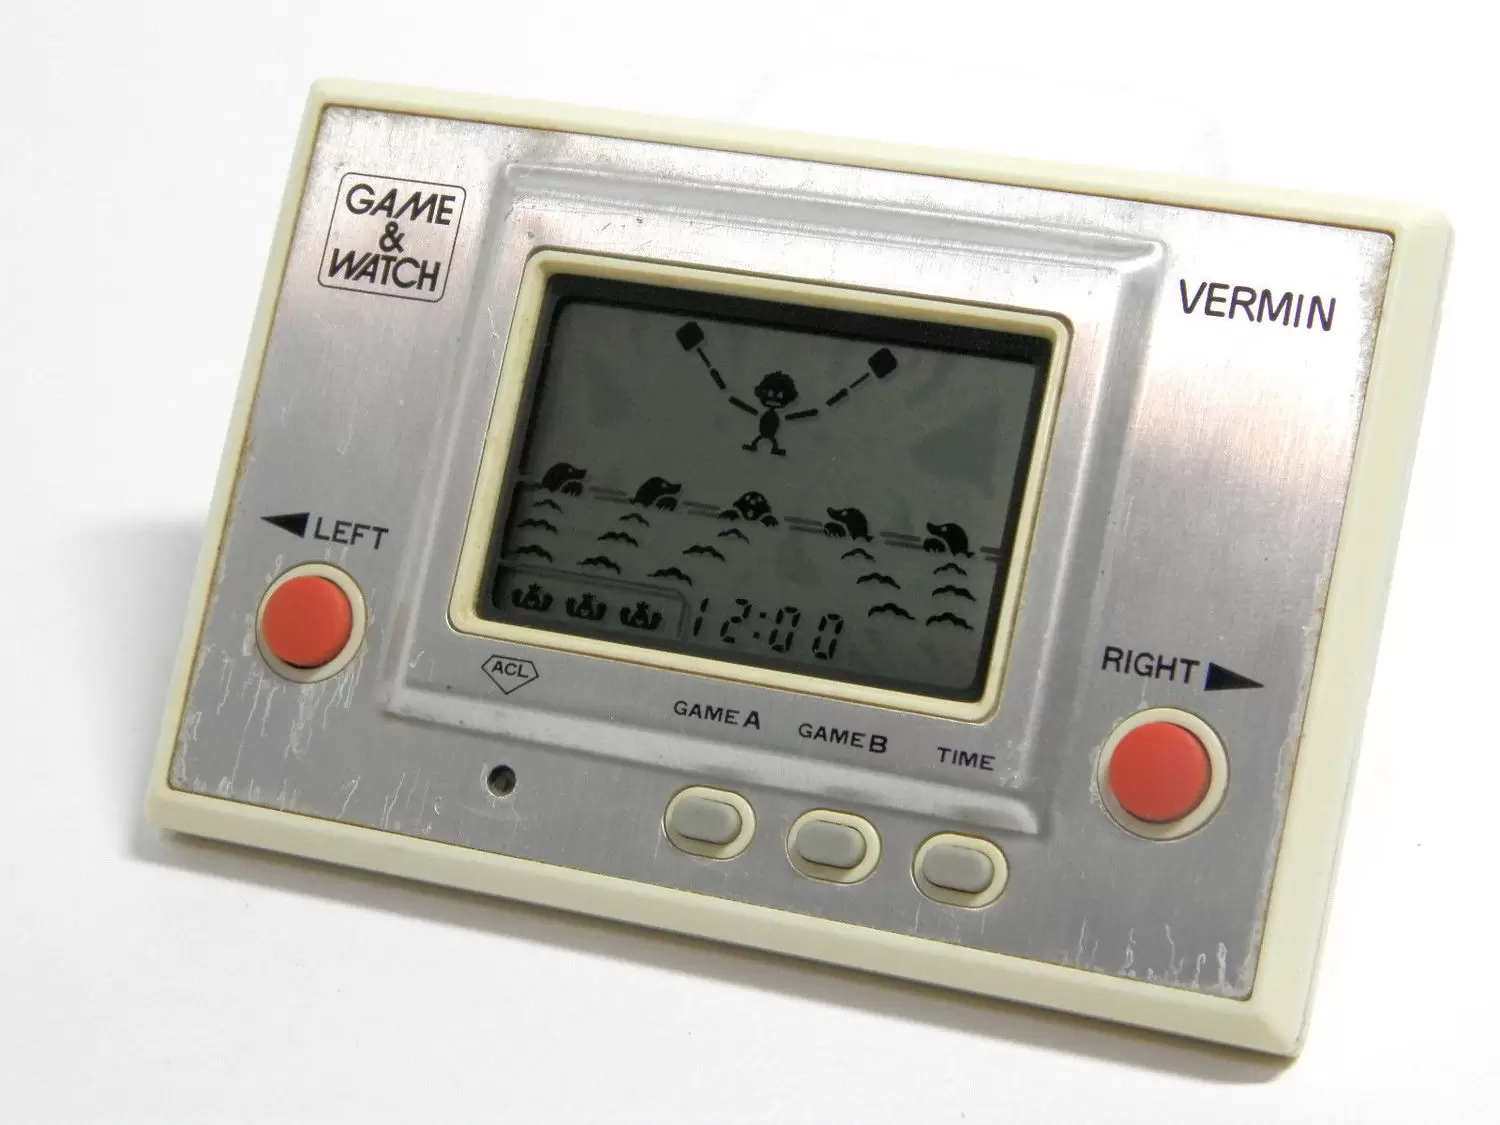 Game & Watch - Vermin